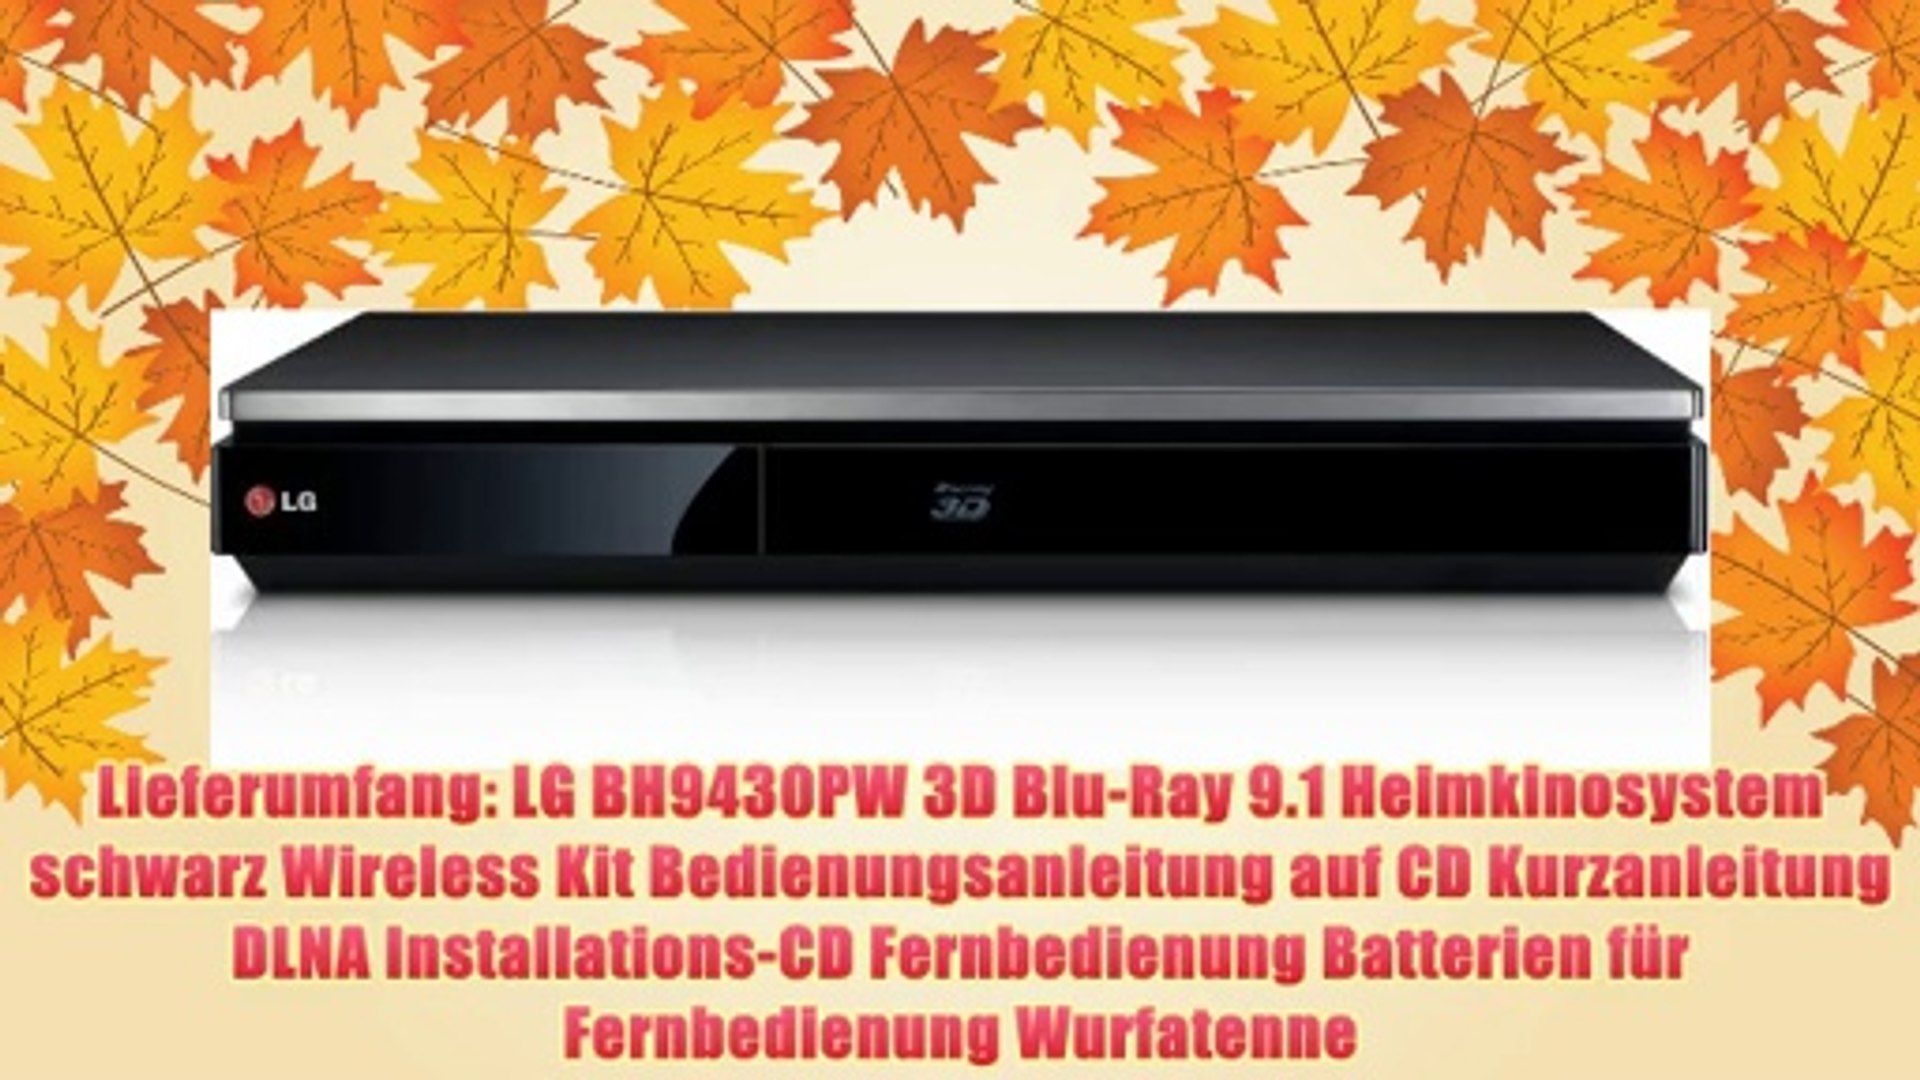 LG BH9430PW 3D Blu-Ray 9.1 Heimkinosystem mit Wireless Lautsprecher (1460  Watt HDMI) schwarz - video Dailymotion